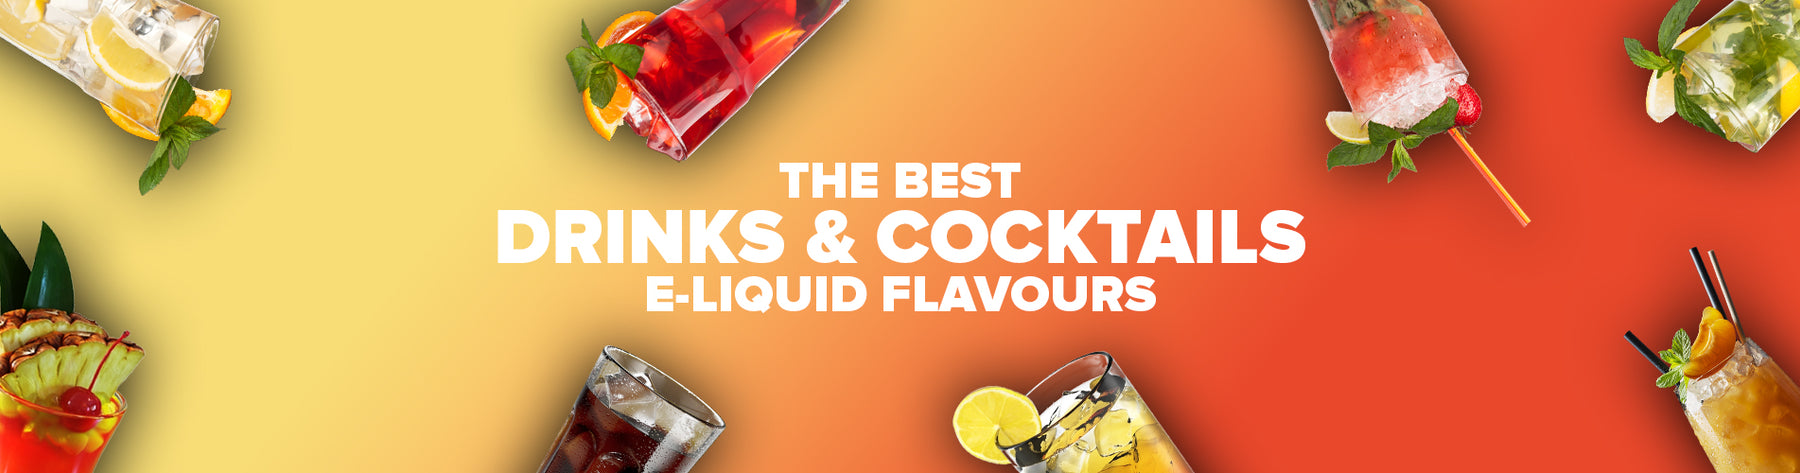 The Best Drinks & Cocktails E-Liquids